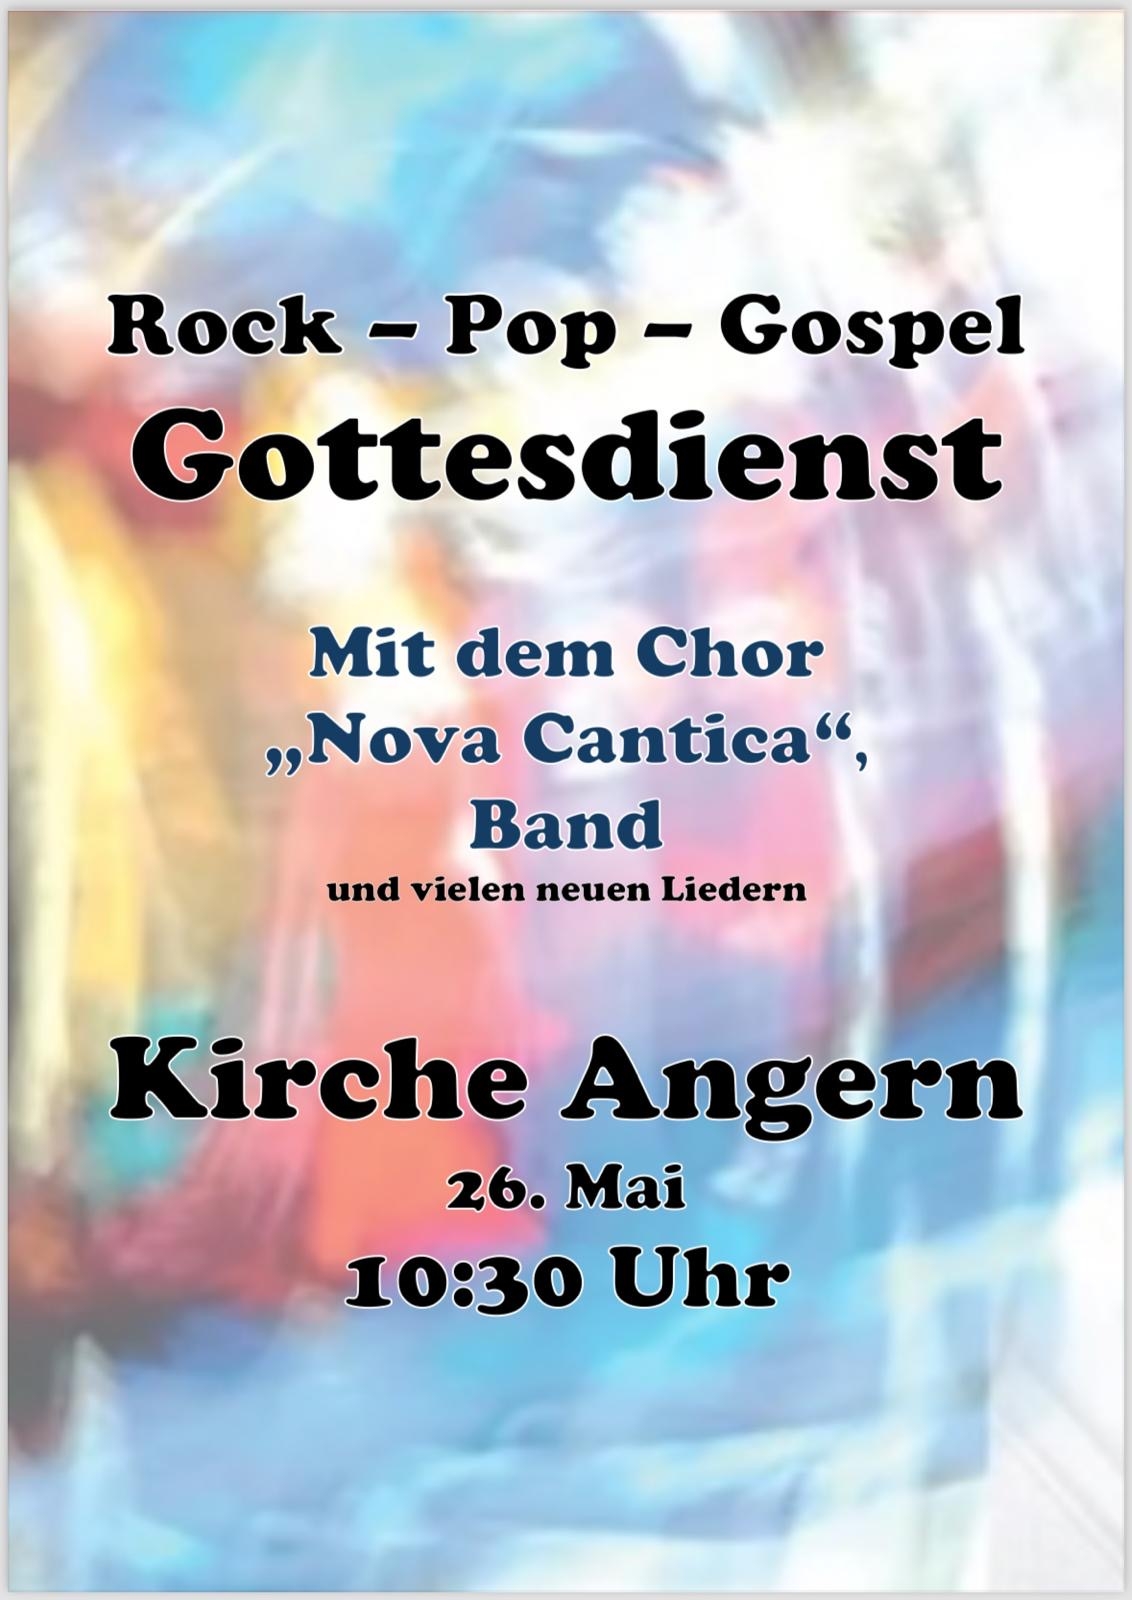 26.5.2024 um 10:30 Uhr Kirche Angern bitte wie folgt ändern: Rock-Pop-Gospel-Gottesdienst mit dem Chor Nova Cantica, Band und vielen neuen Liedern